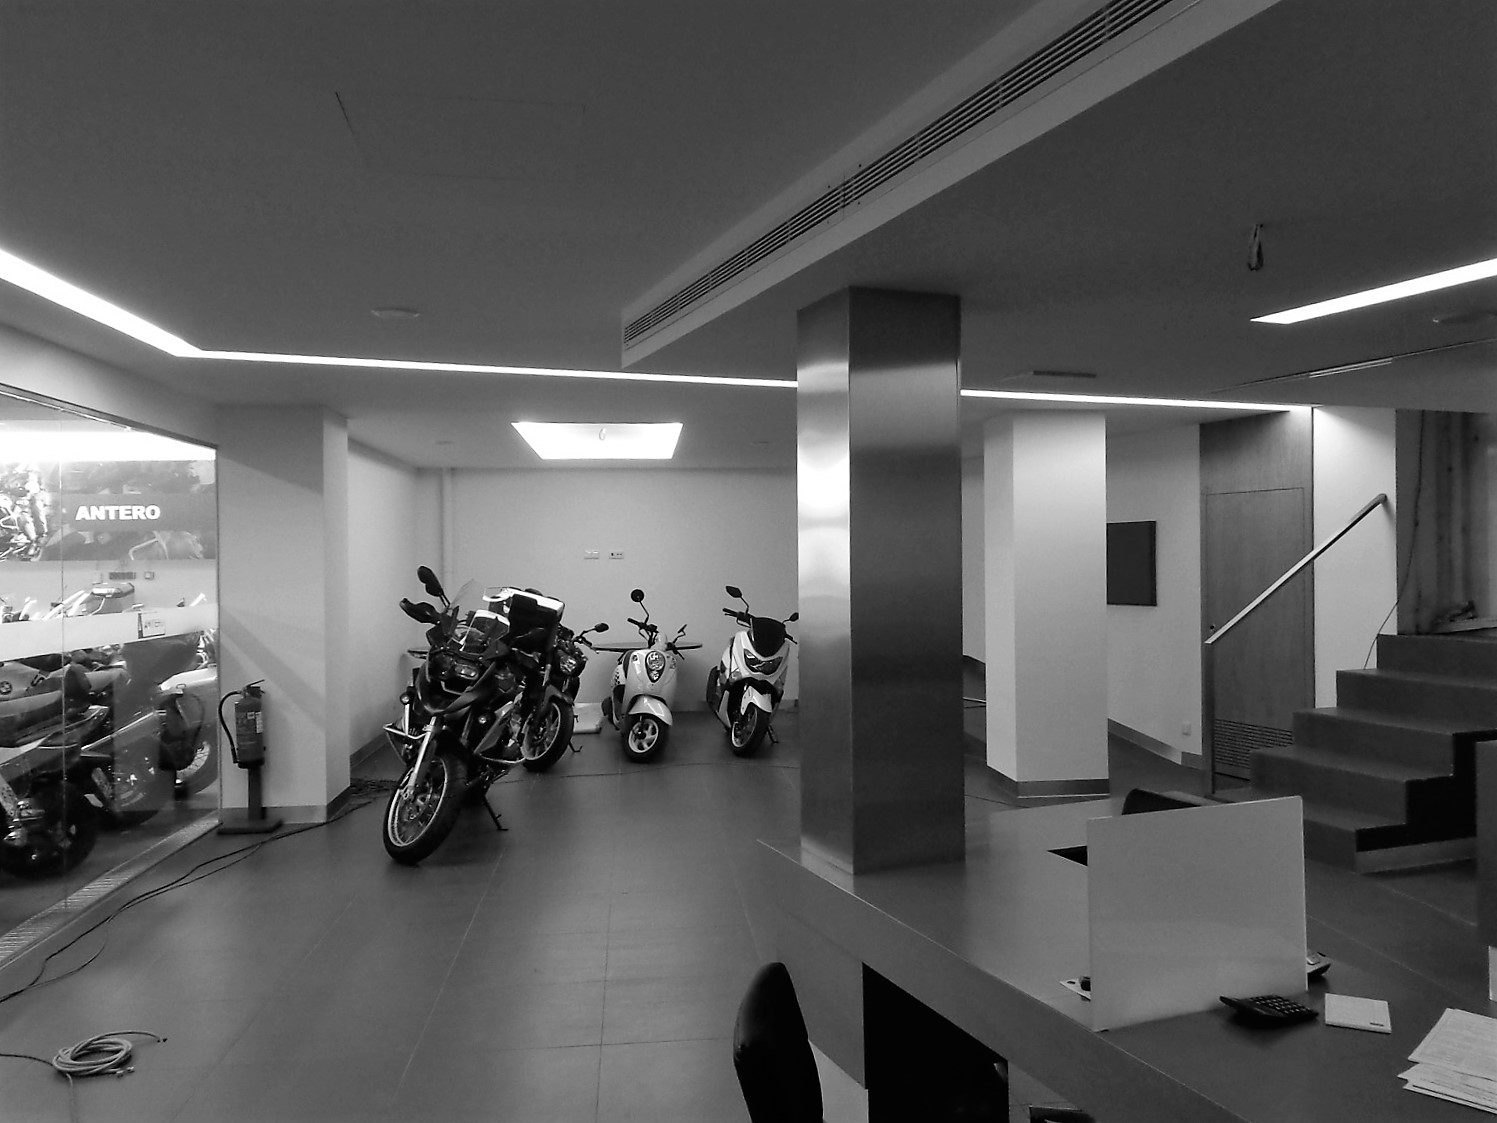 Antero Motos - Construção - Stand - Oficina - BMW - Yamaha - EVA evolutionary architecture - Arquitectos Porto (34).jpg